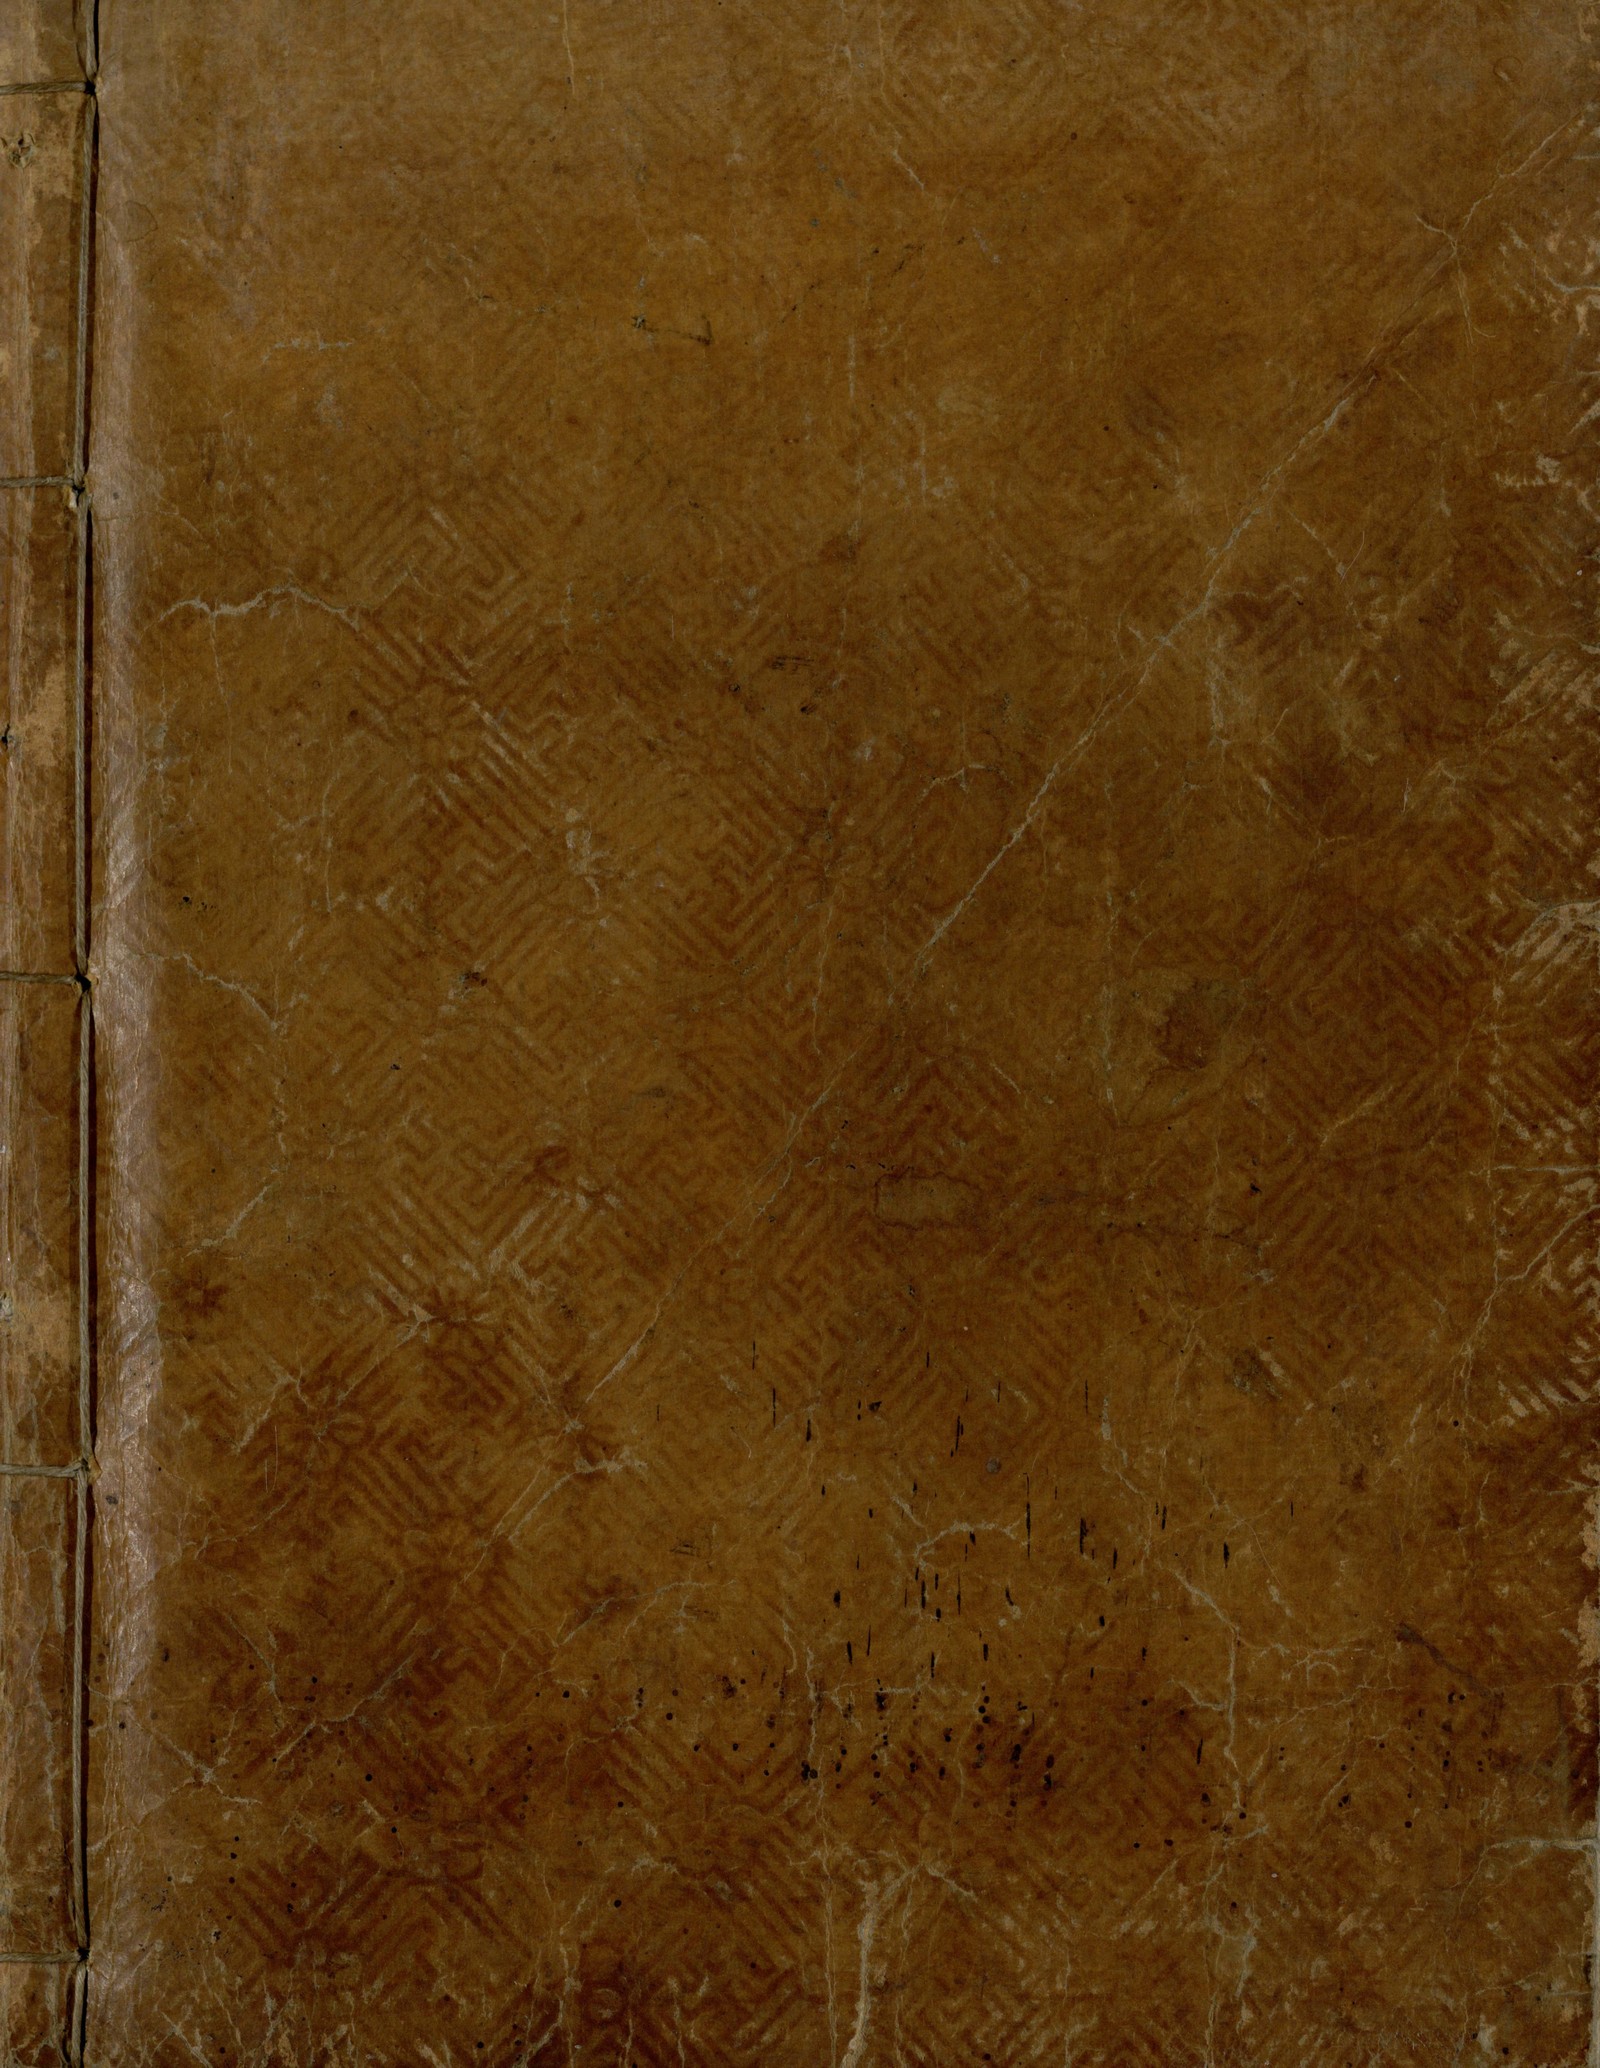 월인석보(月印釋譜) 권1109